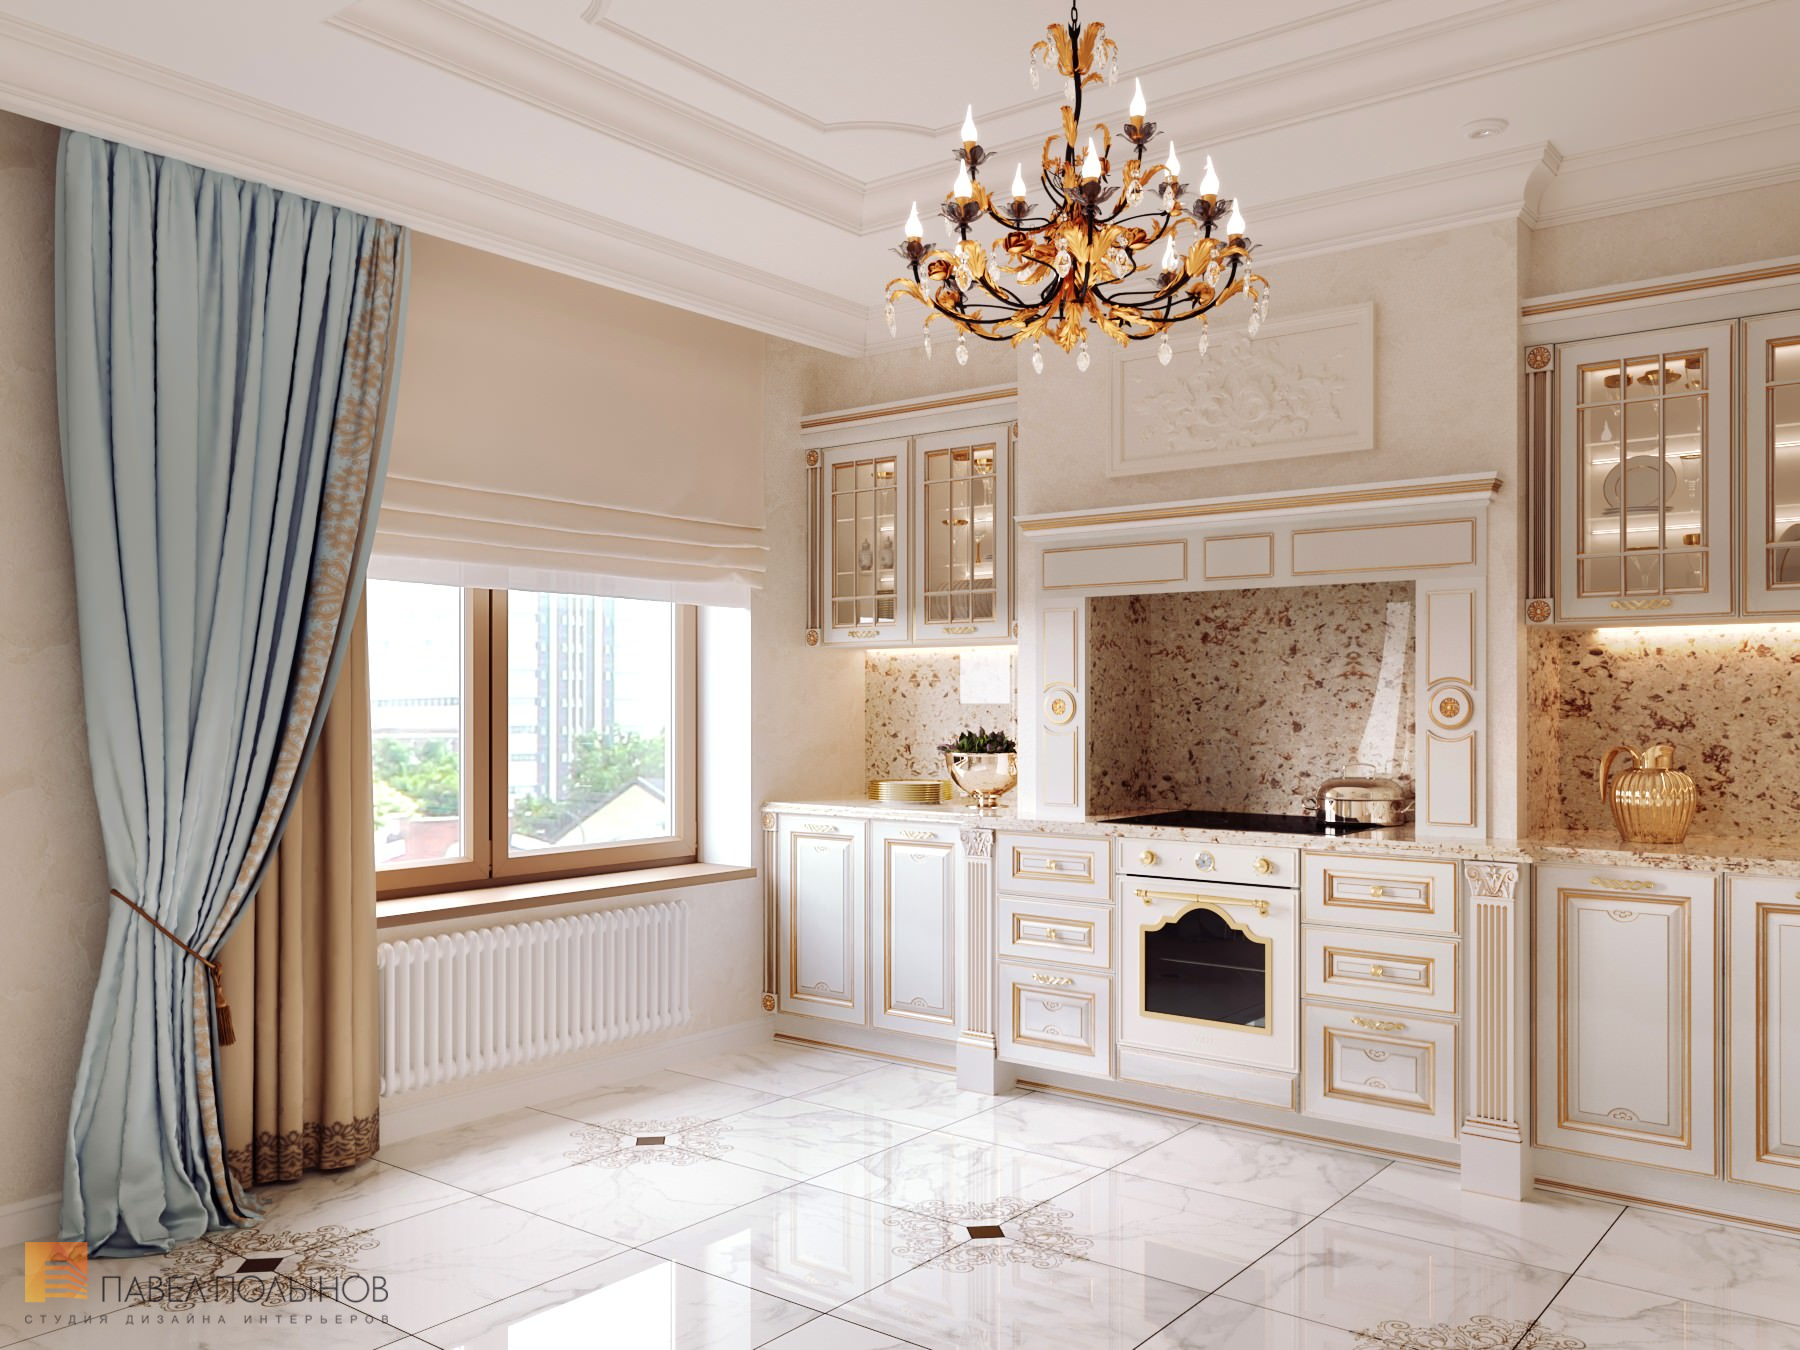 Фото дизайн кухни из проекта «Квартира в классическом стиле в ЖК «Русский дом», 144 кв.м.»